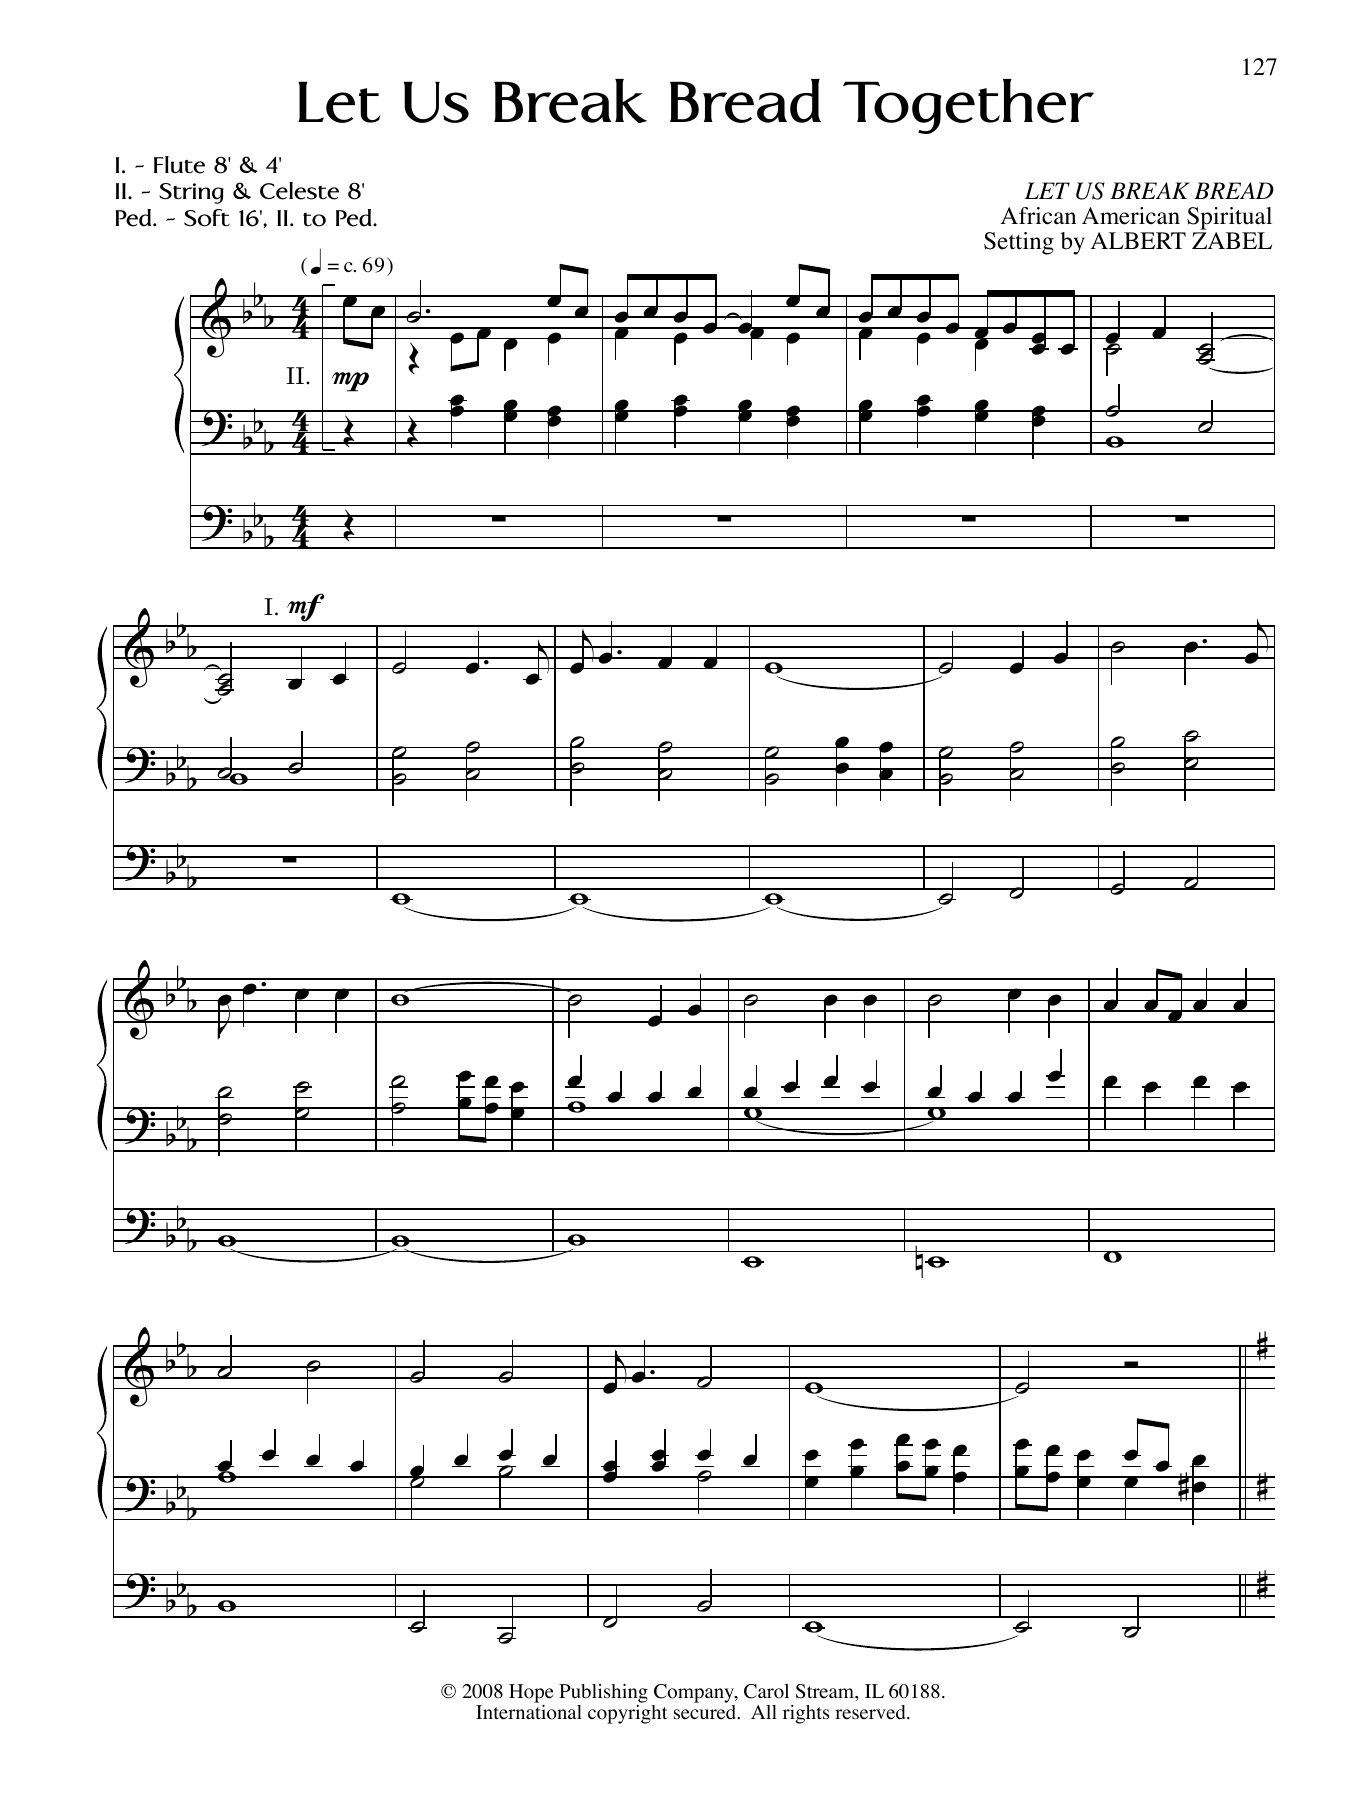 Albert Zabel Let Us Break Bread Together Sheet Music Notes & Chords for Organ - Download or Print PDF